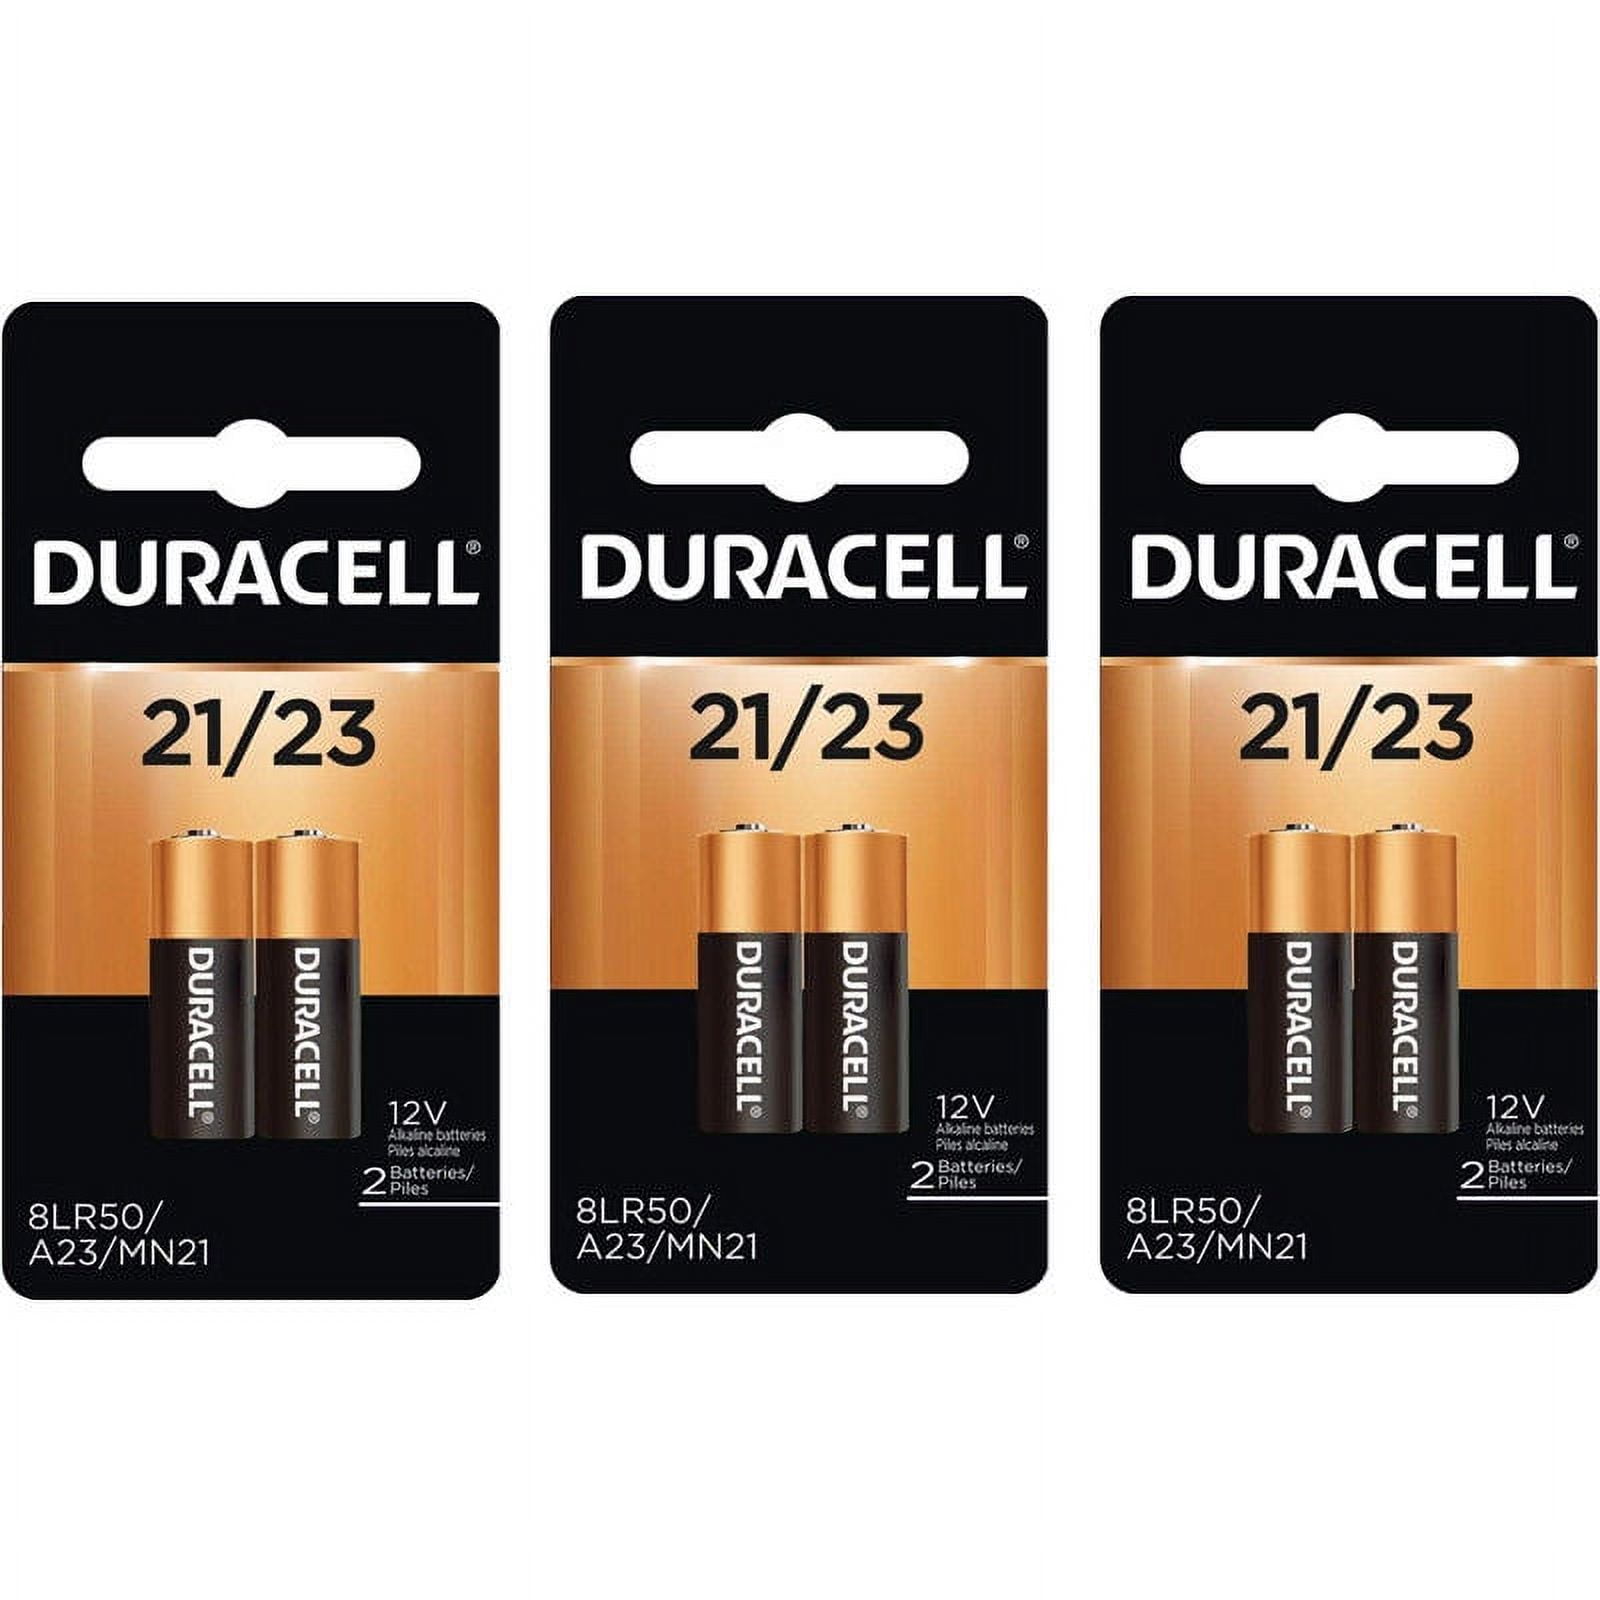 Paquete de batería Duracell 12V A23, 1 pieza.